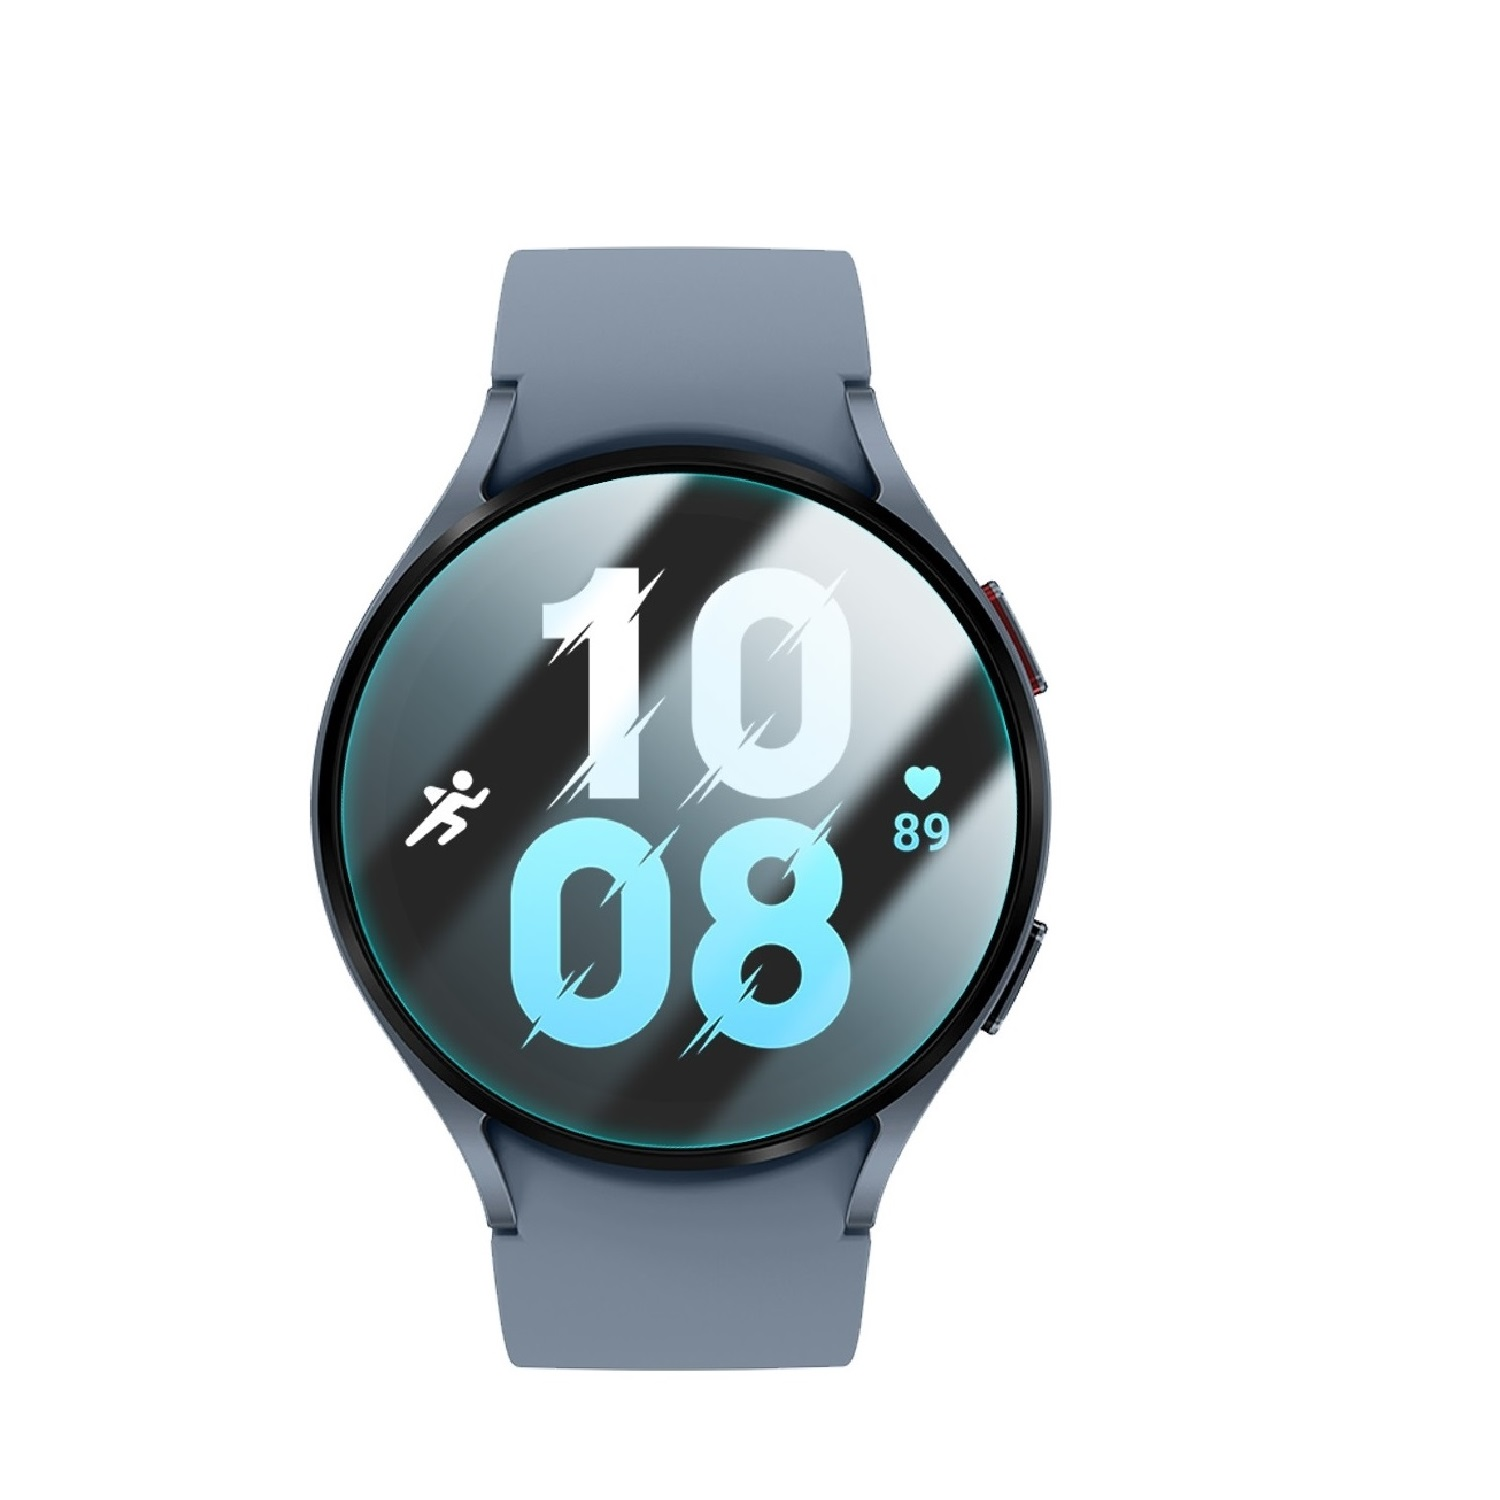 Displayschutzfolie(für Hartglas Galaxy 44mm) PROTECTORKING 9H Watch 5 Samsung Schutzglas KLAR HD 6x